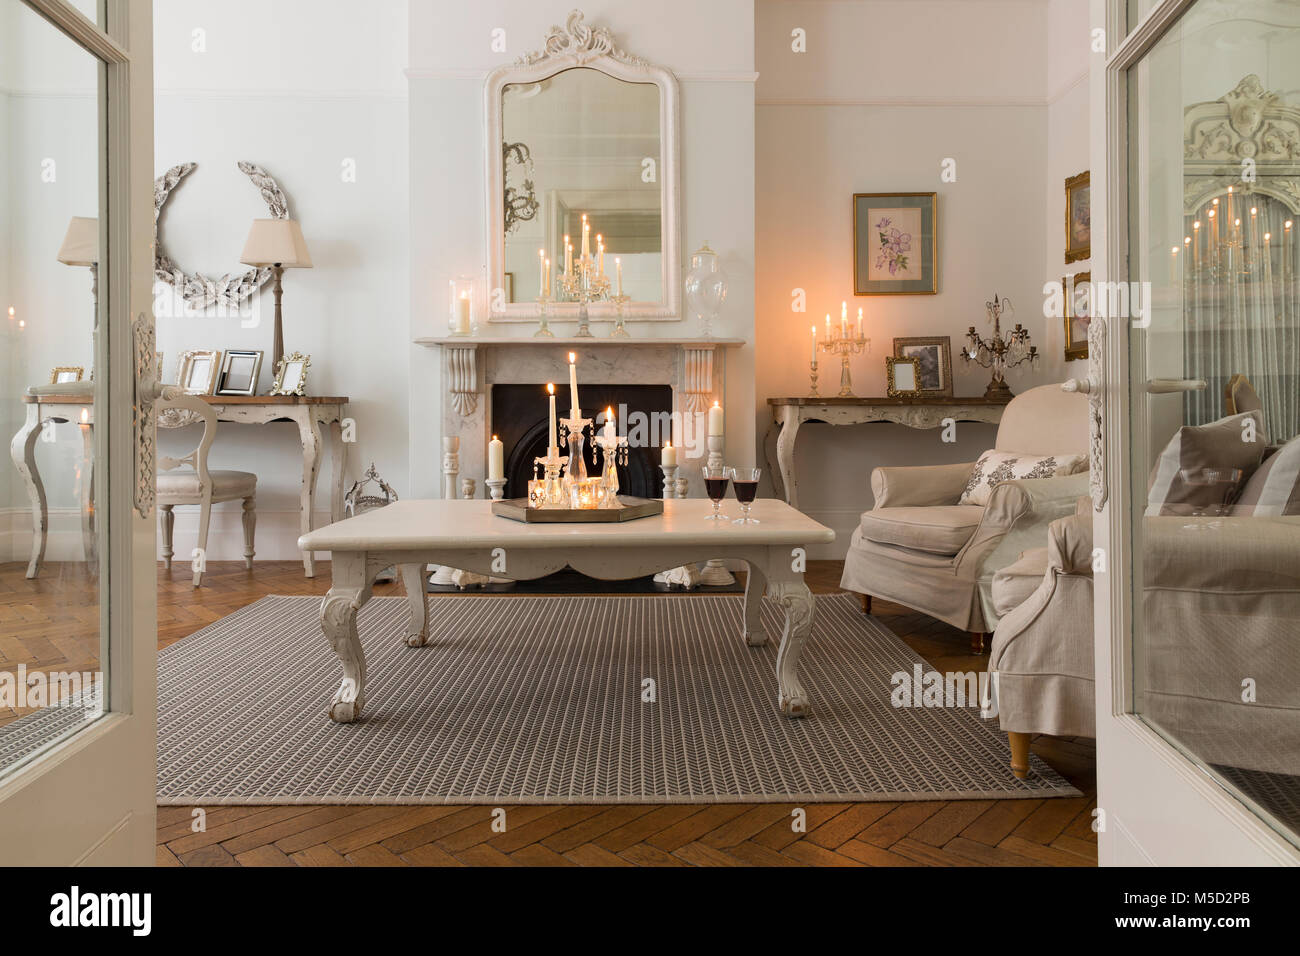 Bei Kerzenschein Luxus Home Showcase interior Wohnzimmer mit Kamin Stockfoto